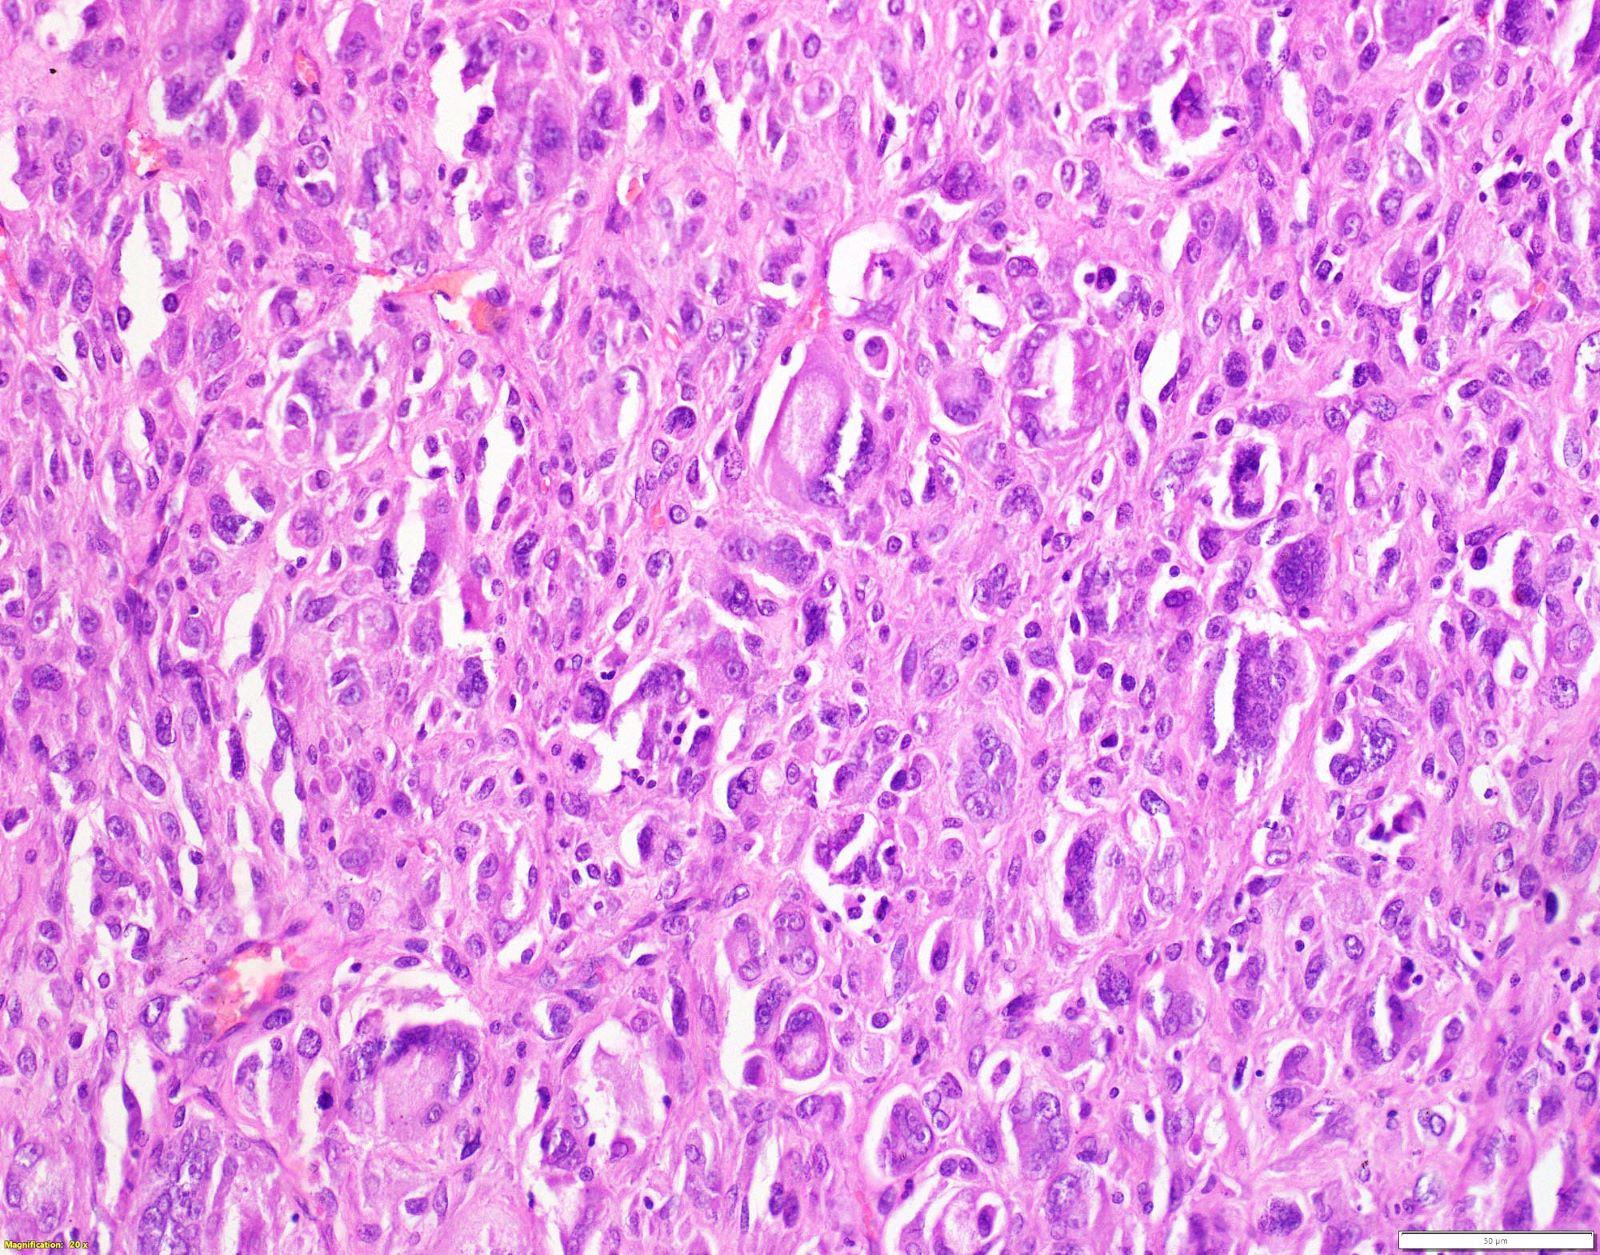 Tumor giant cells